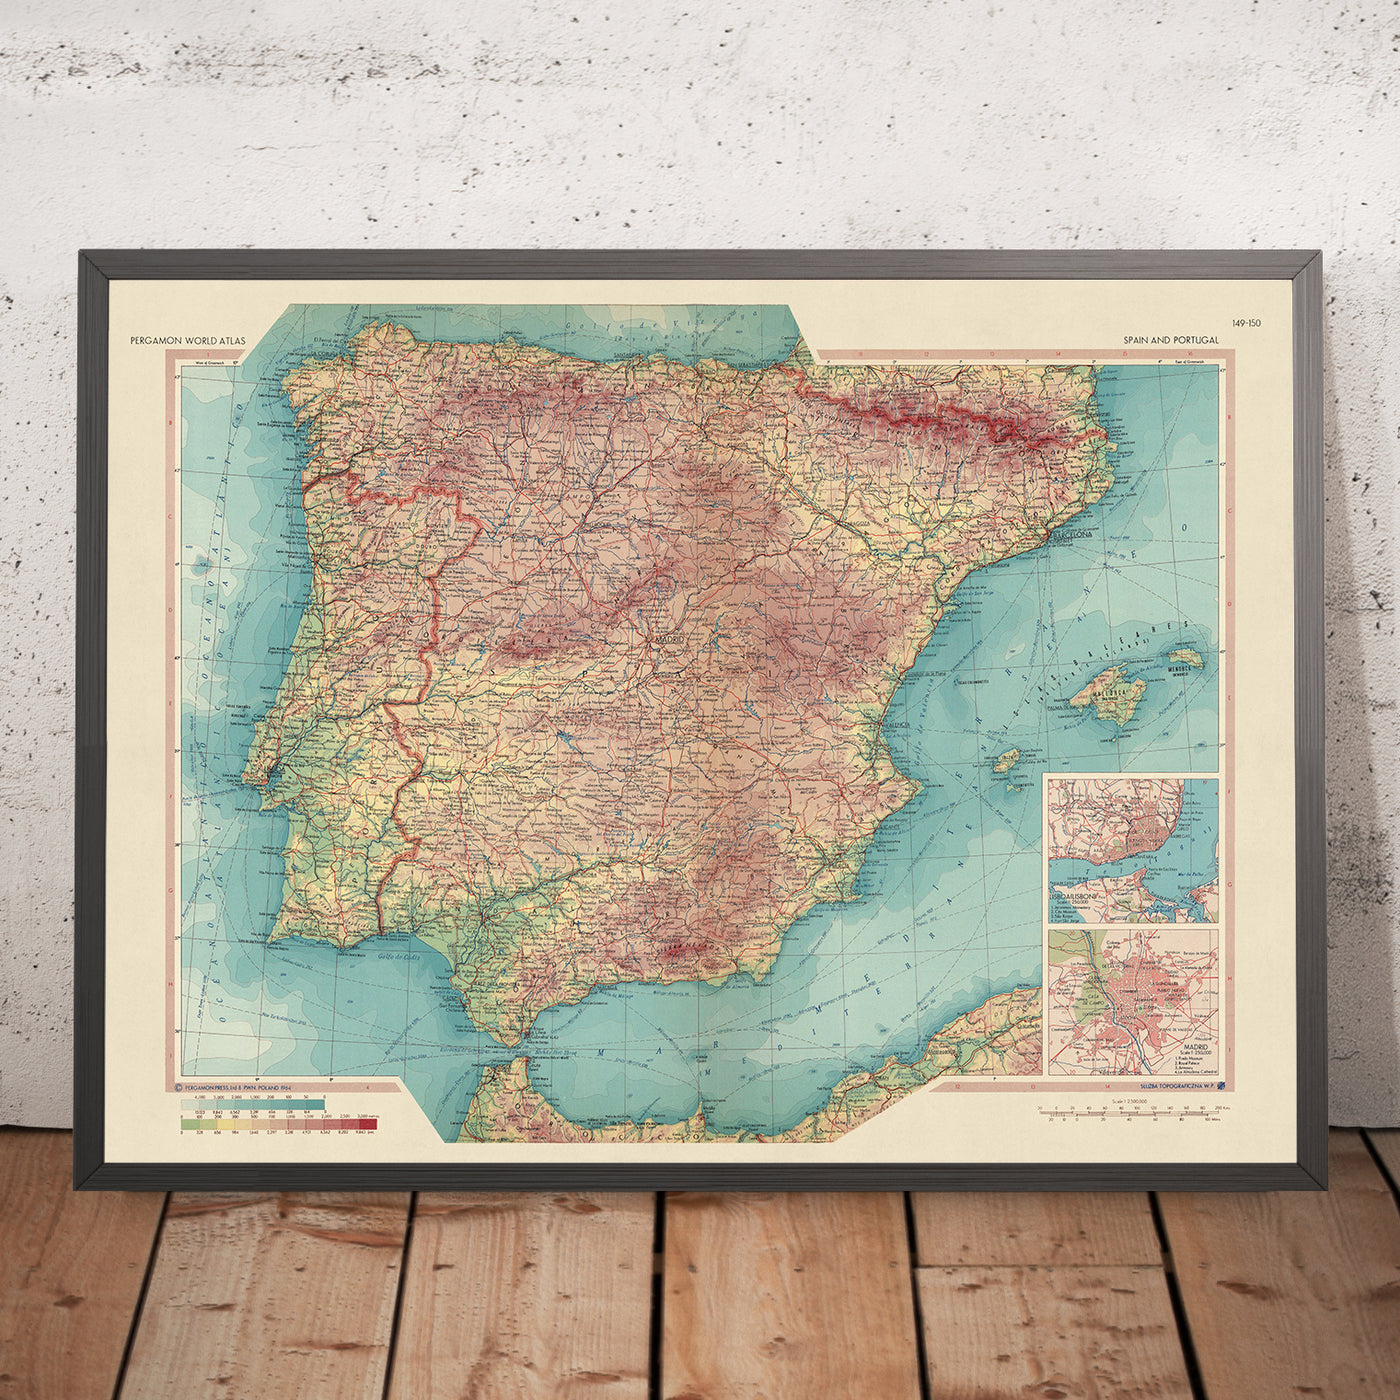 Alte Karte von Spanien und Portugal, 1967: Madrid, Barcelona, Valencia, Sevilla, Lissabon